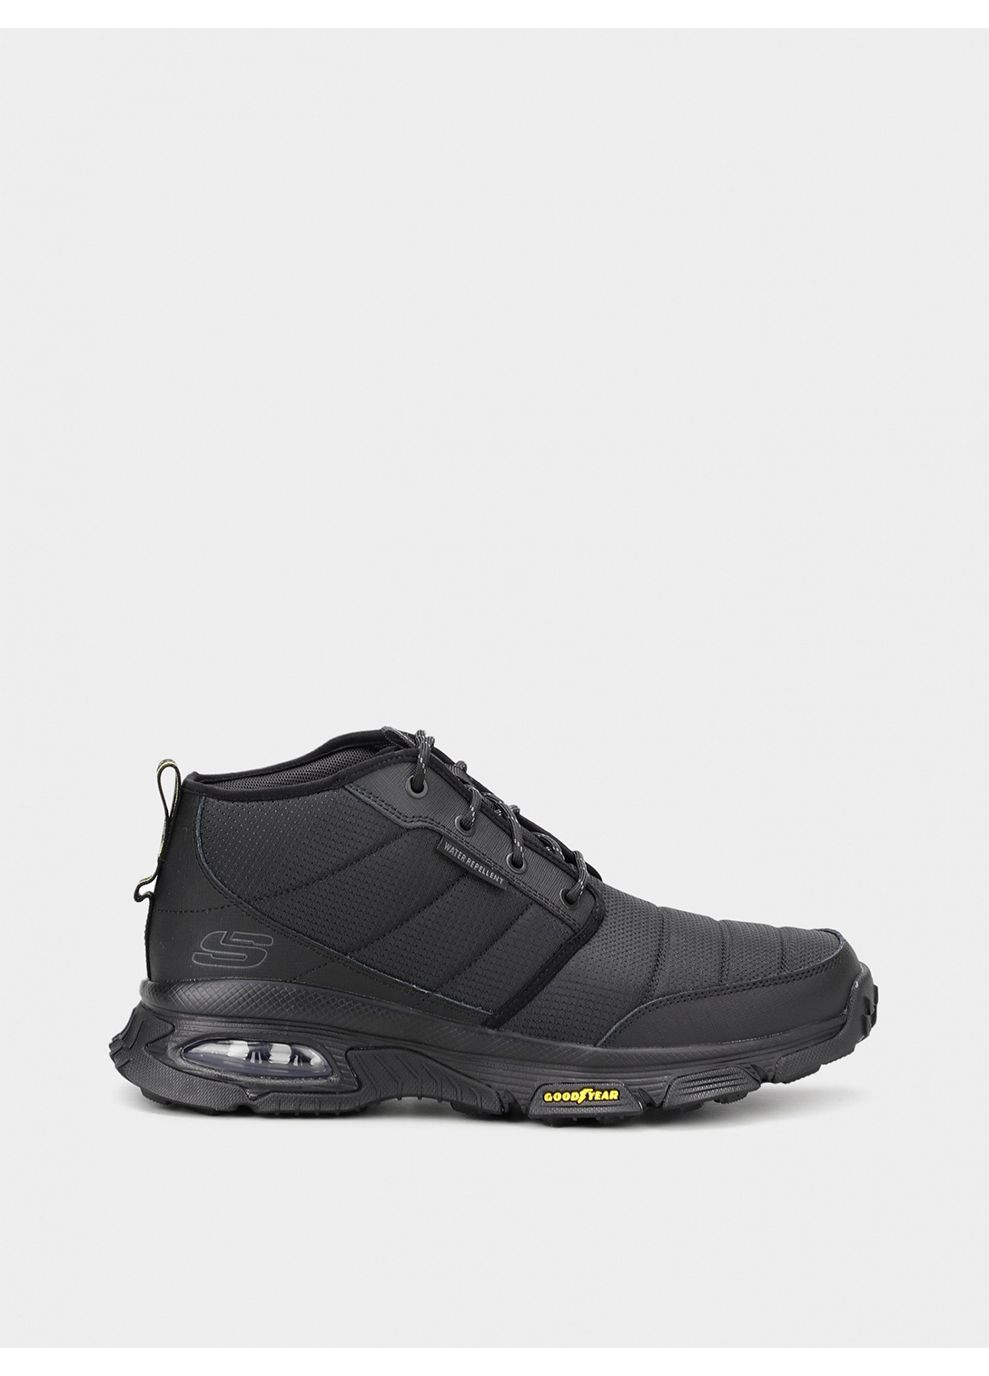 Черные осенние мужские ботинки 237317 bbk черный Skechers